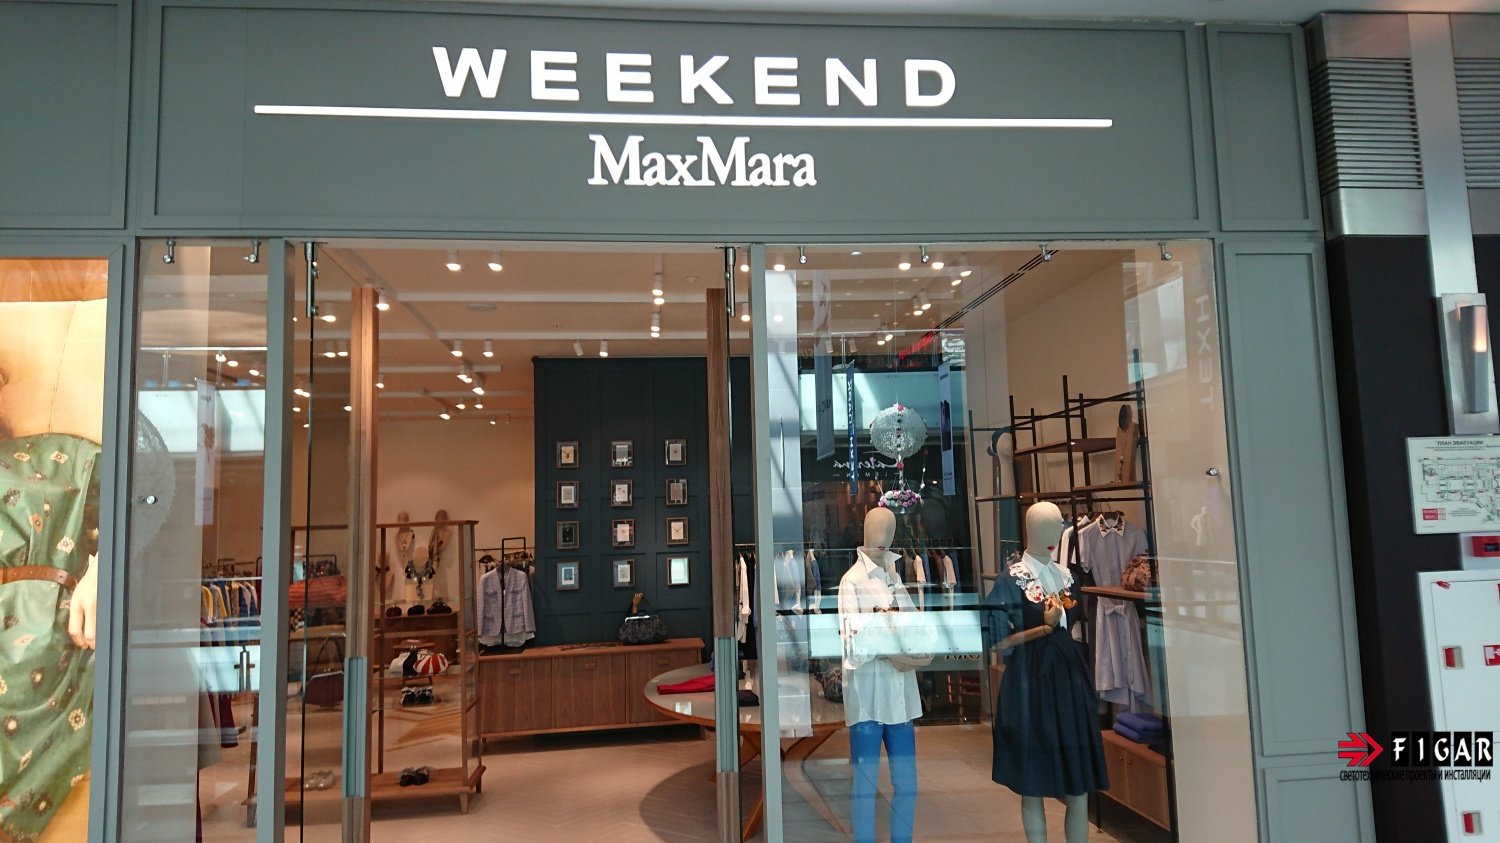 Оформление освещения в магазине одежды Weekend MaxMara